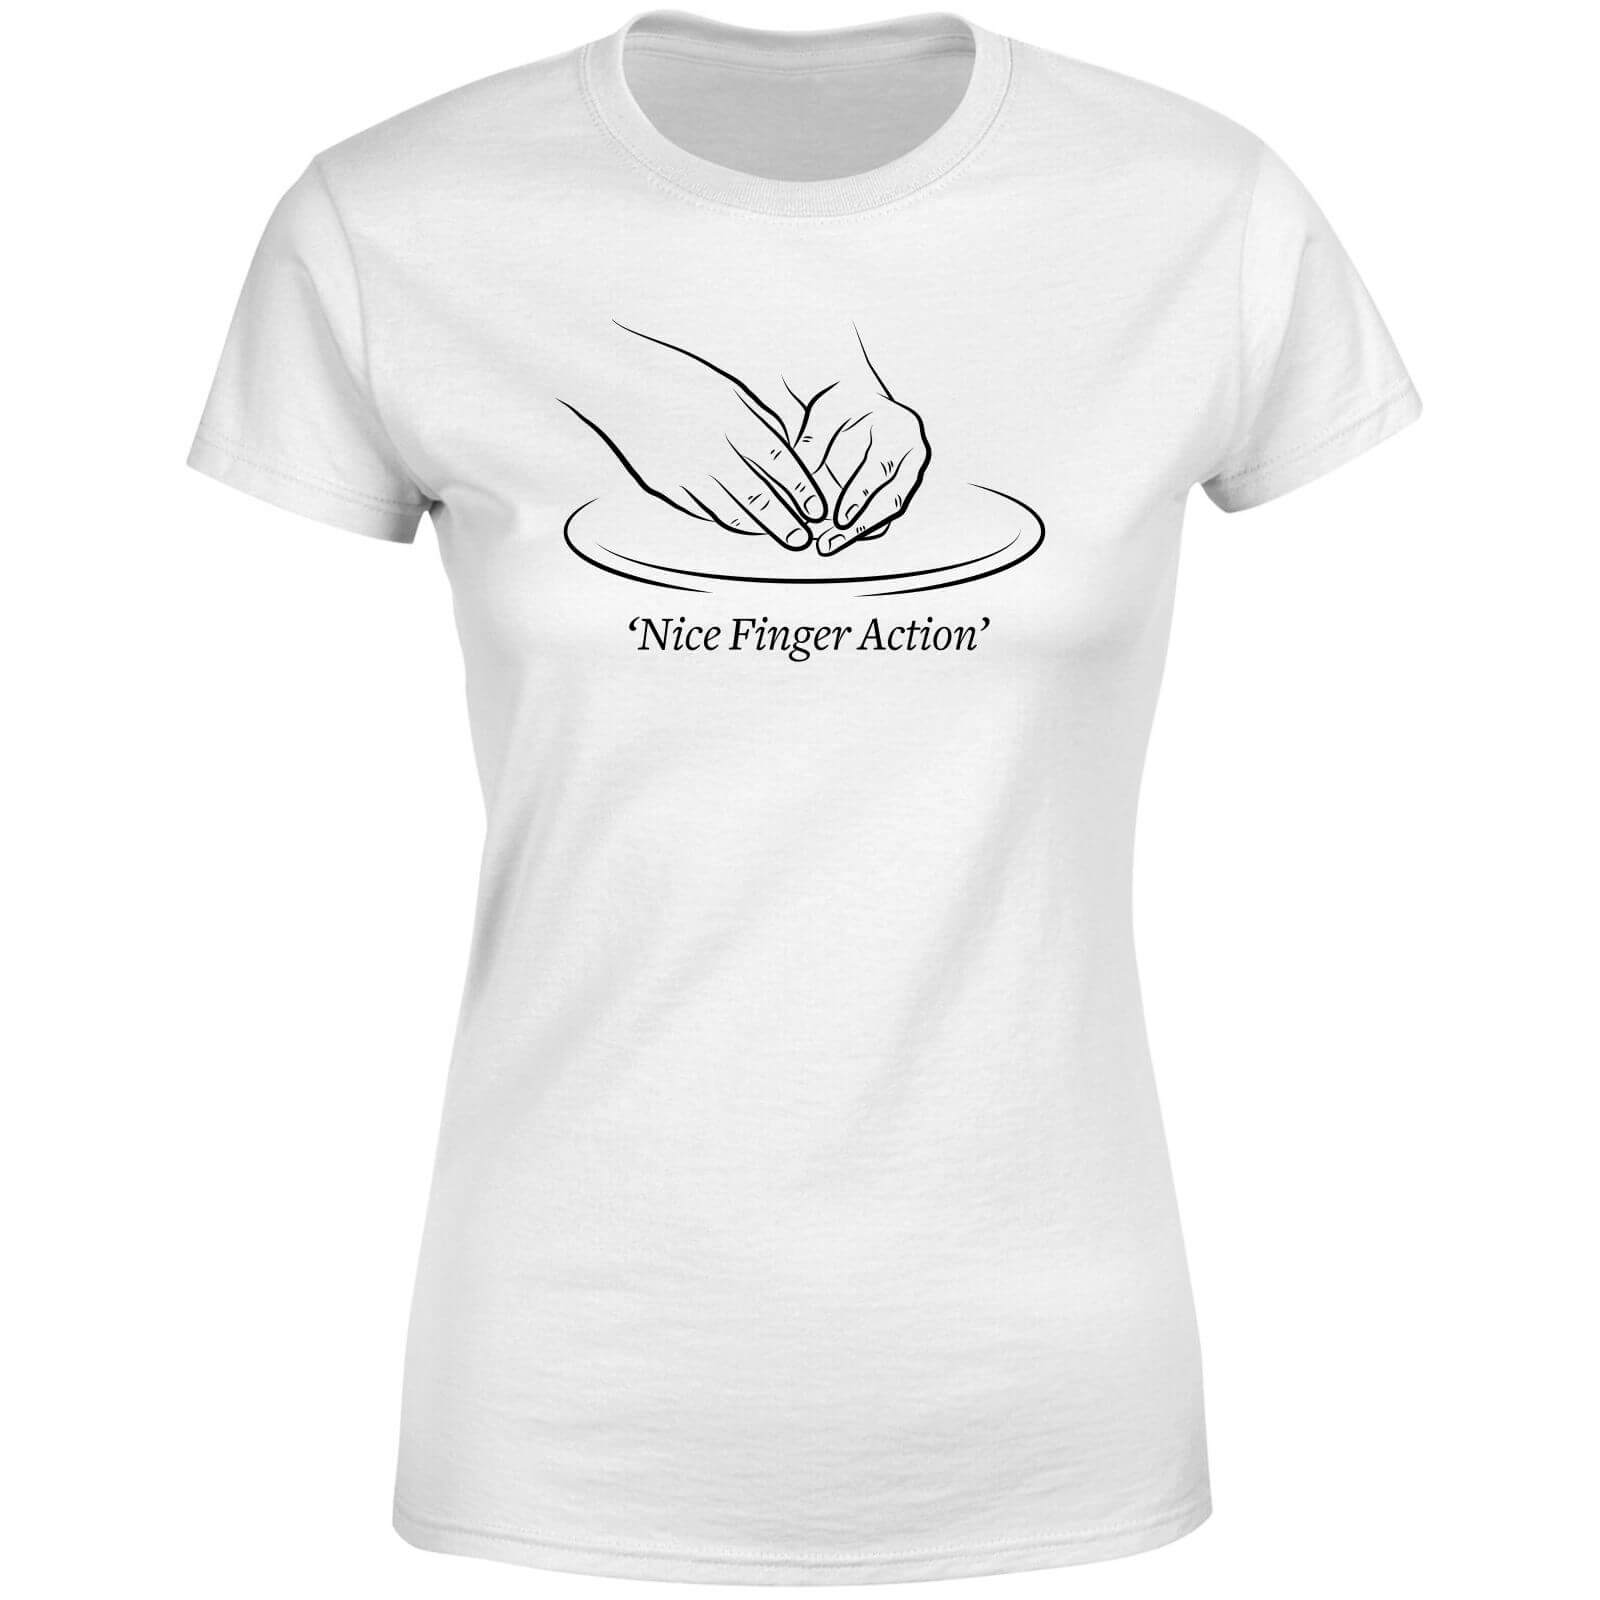 Nice Finger Action Women's T-Shirt - White - 3XL - White